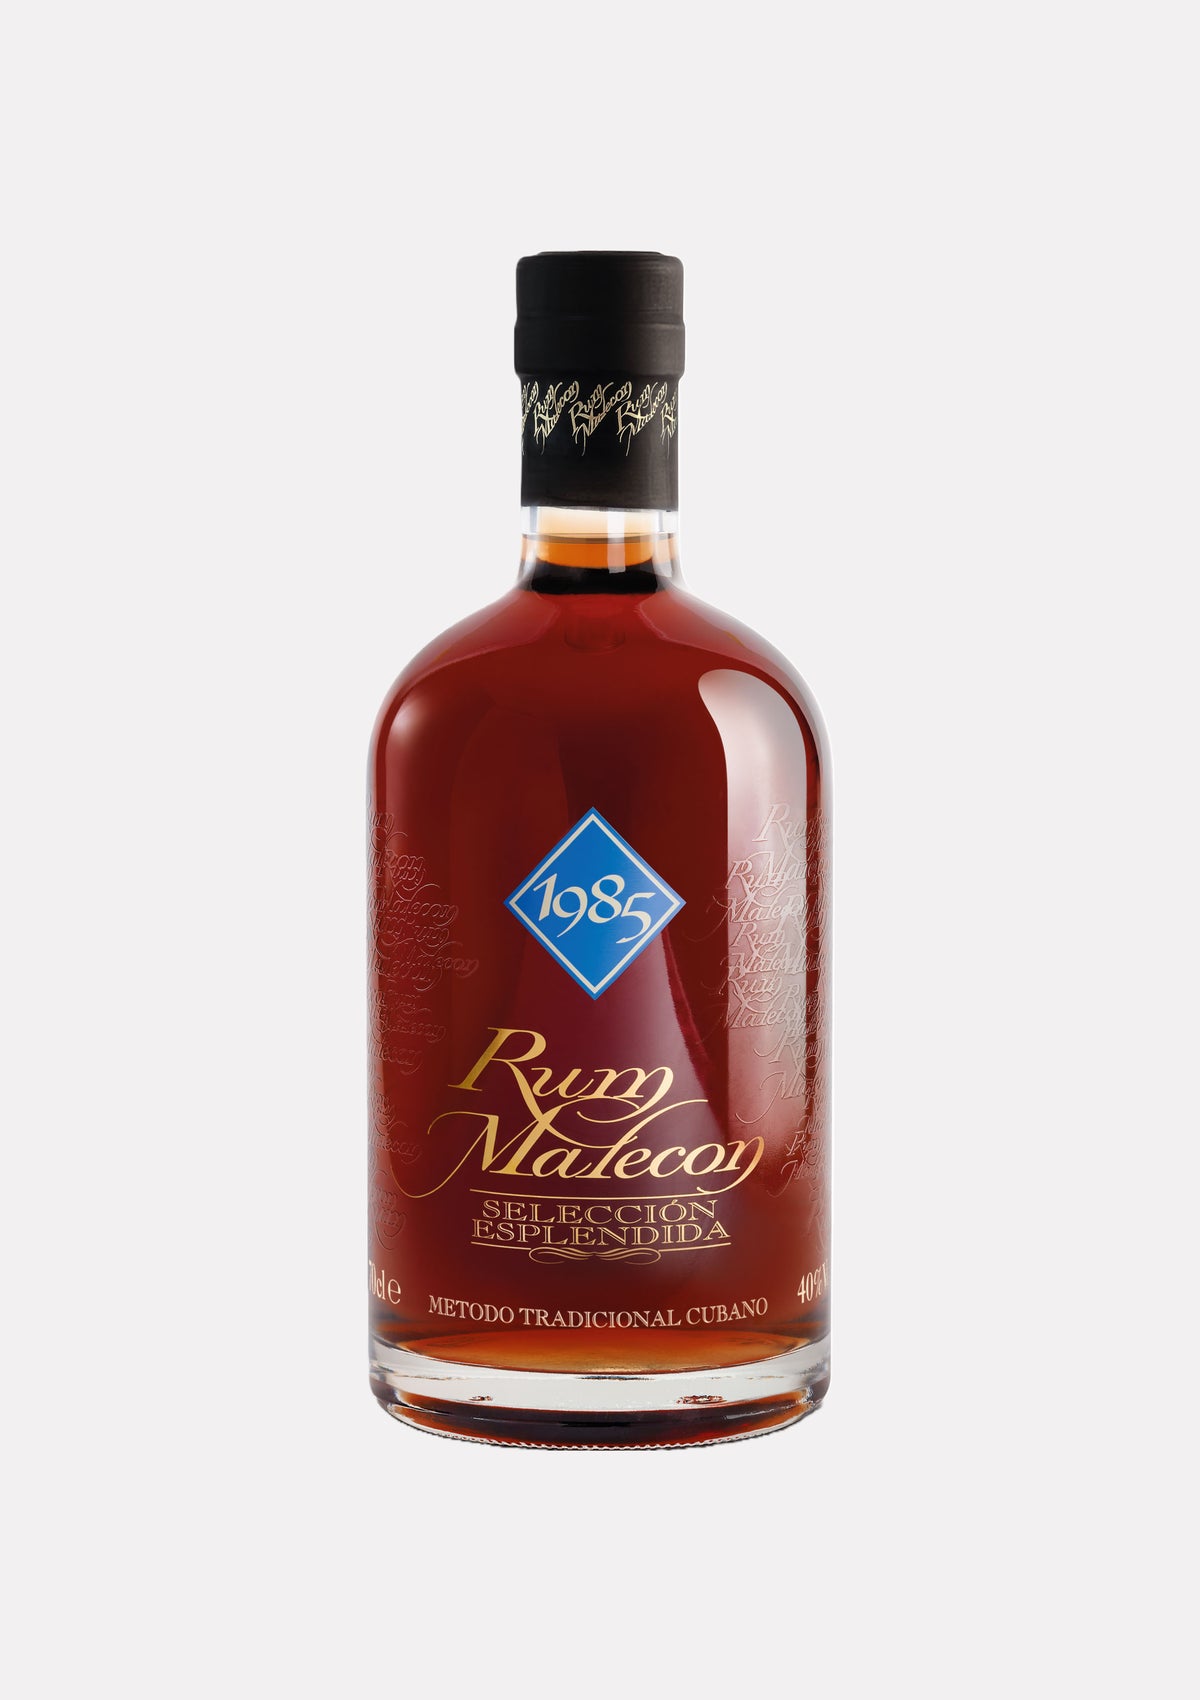 Rum Malecon Seleccion Esplendida Vintage 1985